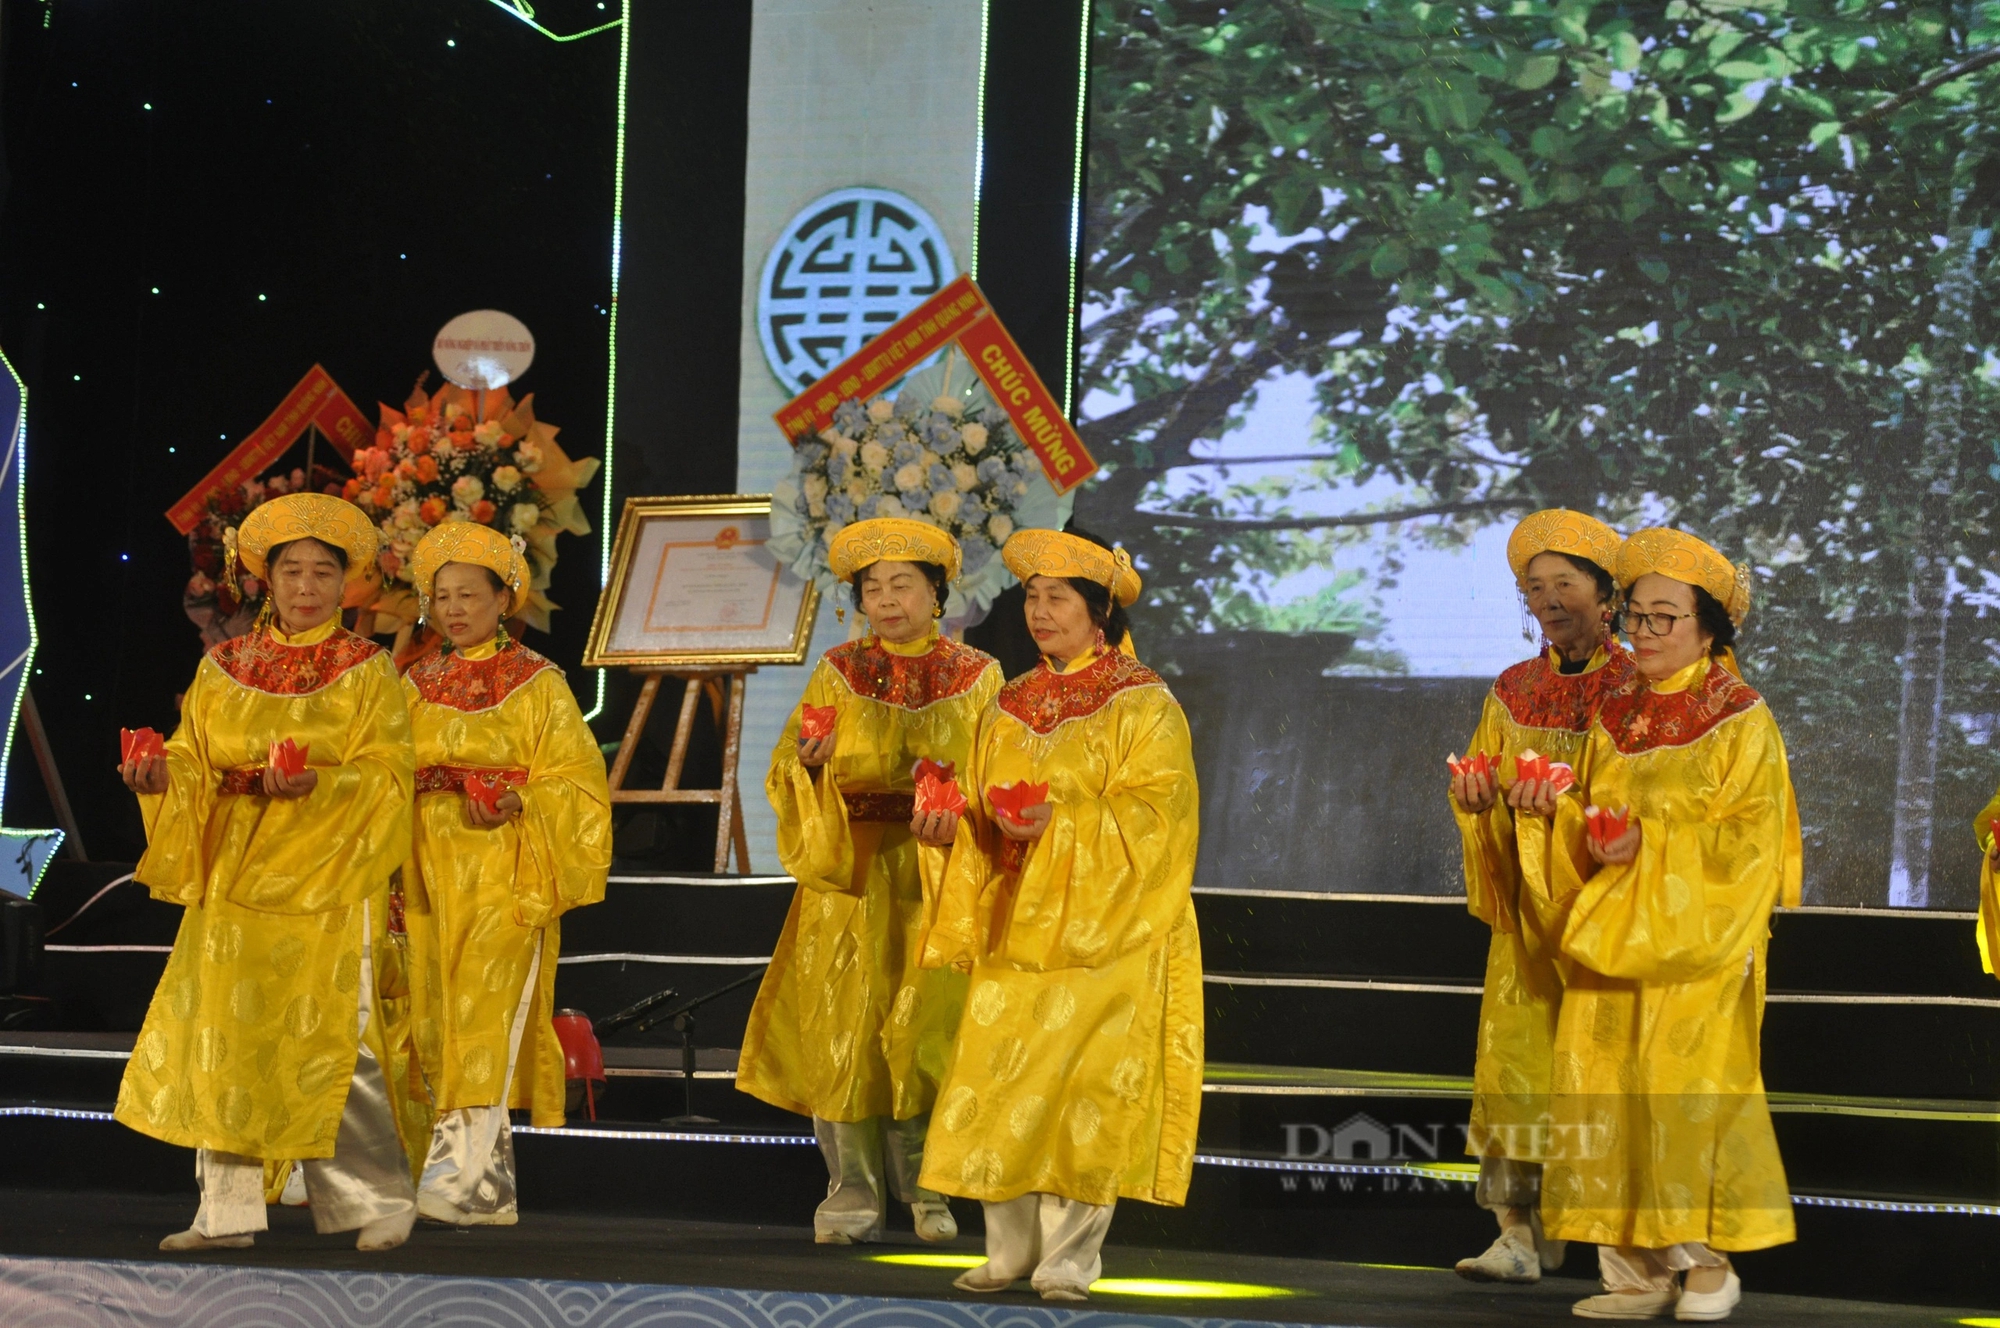 Nét độc đáo của lễ hội ở Quảng Ninh vừa được công nhận Di sản văn hóa phi vật thể cấp quốc gia - Ảnh 4.